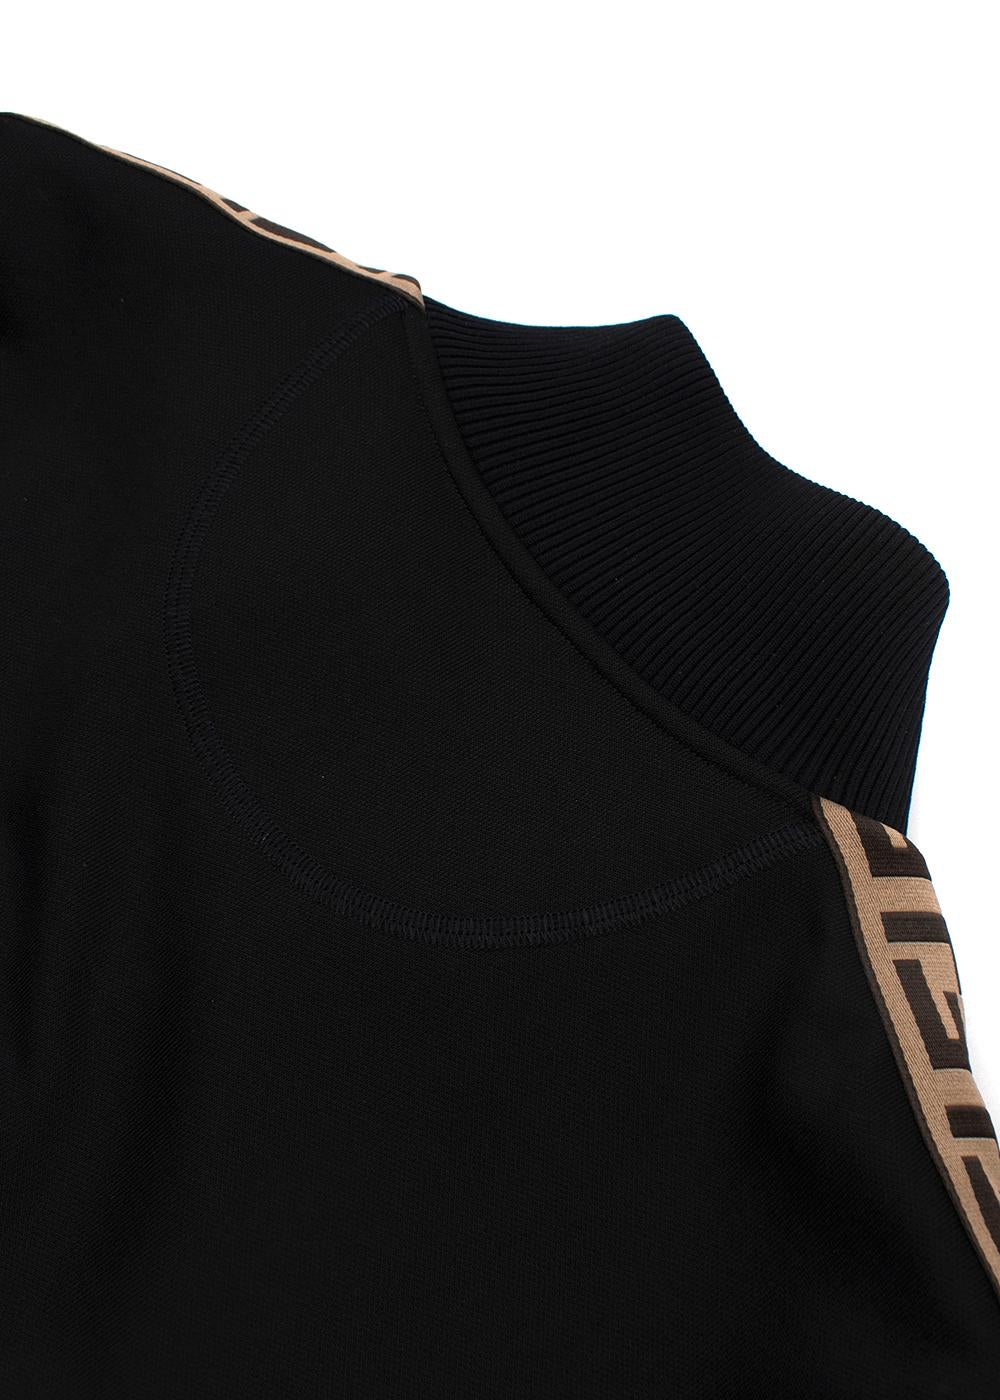 Fendi Black FF Trimmed Track Jacket (US 12) & Joggers (US 10) For Sale 3